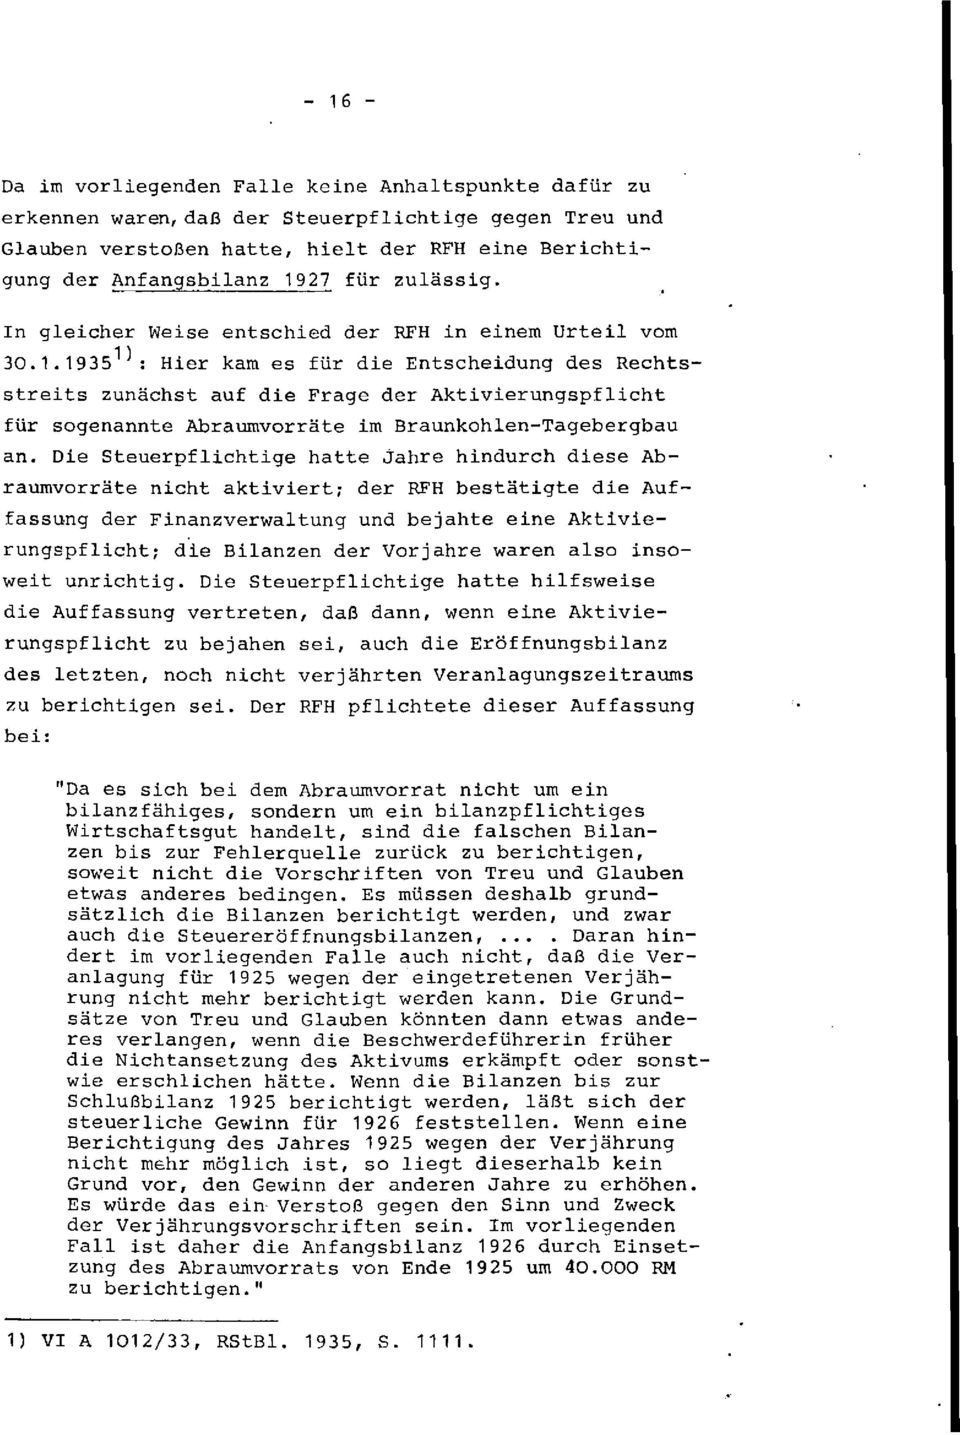 1935^: Hier kam es für die Entscheidung des Rechtsstreits zunächst auf die Frage der Aktivierungspflicht für sogenannte Abraumvorräte im Braunkohlen-Tagebergbau an.